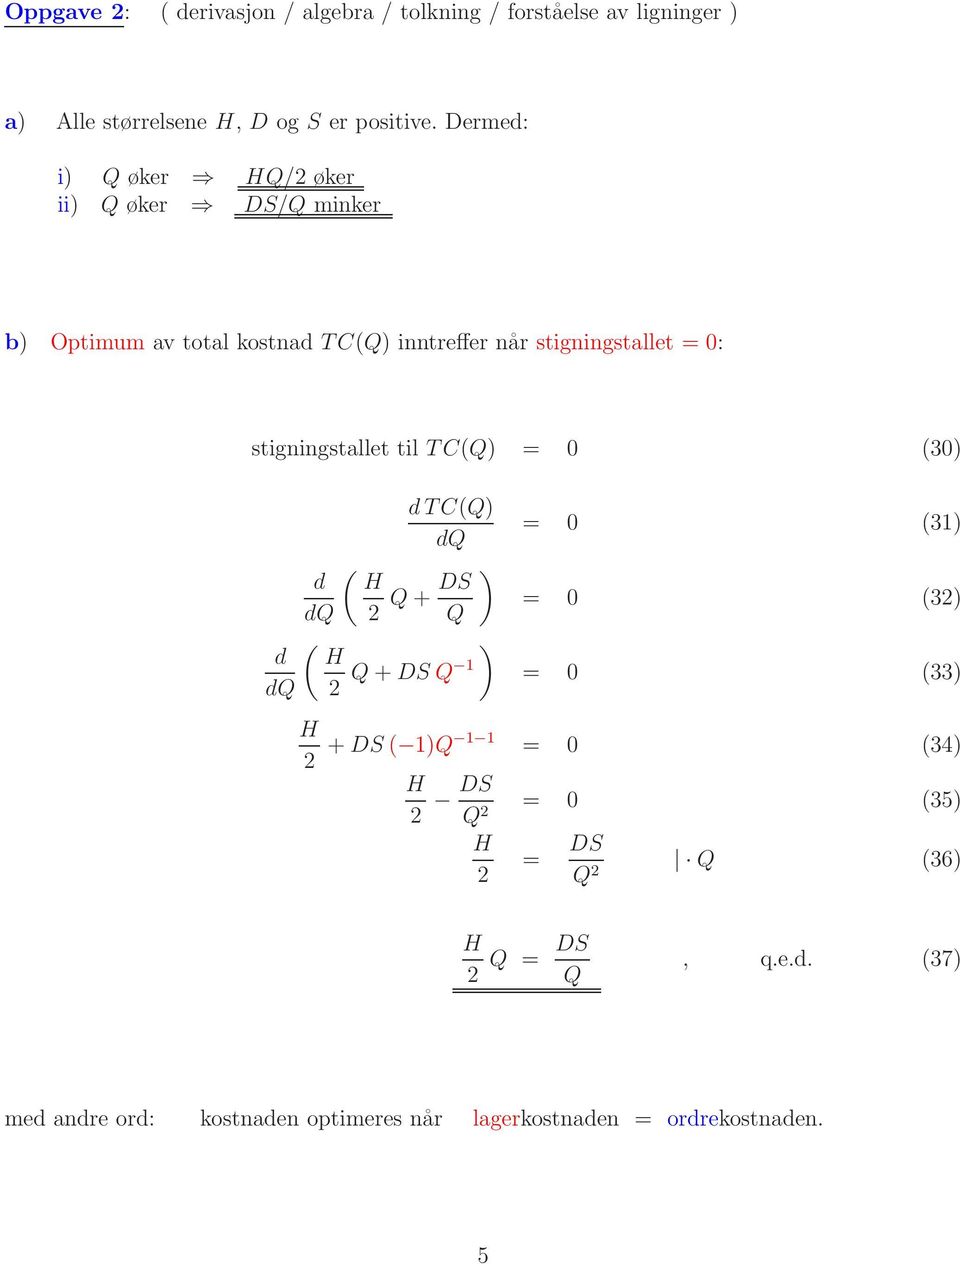 0: stigningstallet til T C(Q) = 0 (30) dtc(q) dq ( ) d DS Q+ dq Q ( ) d dq Q+DSQ = 0 (3) = 0 (3) = 0 (33) +DS( )Q = 0